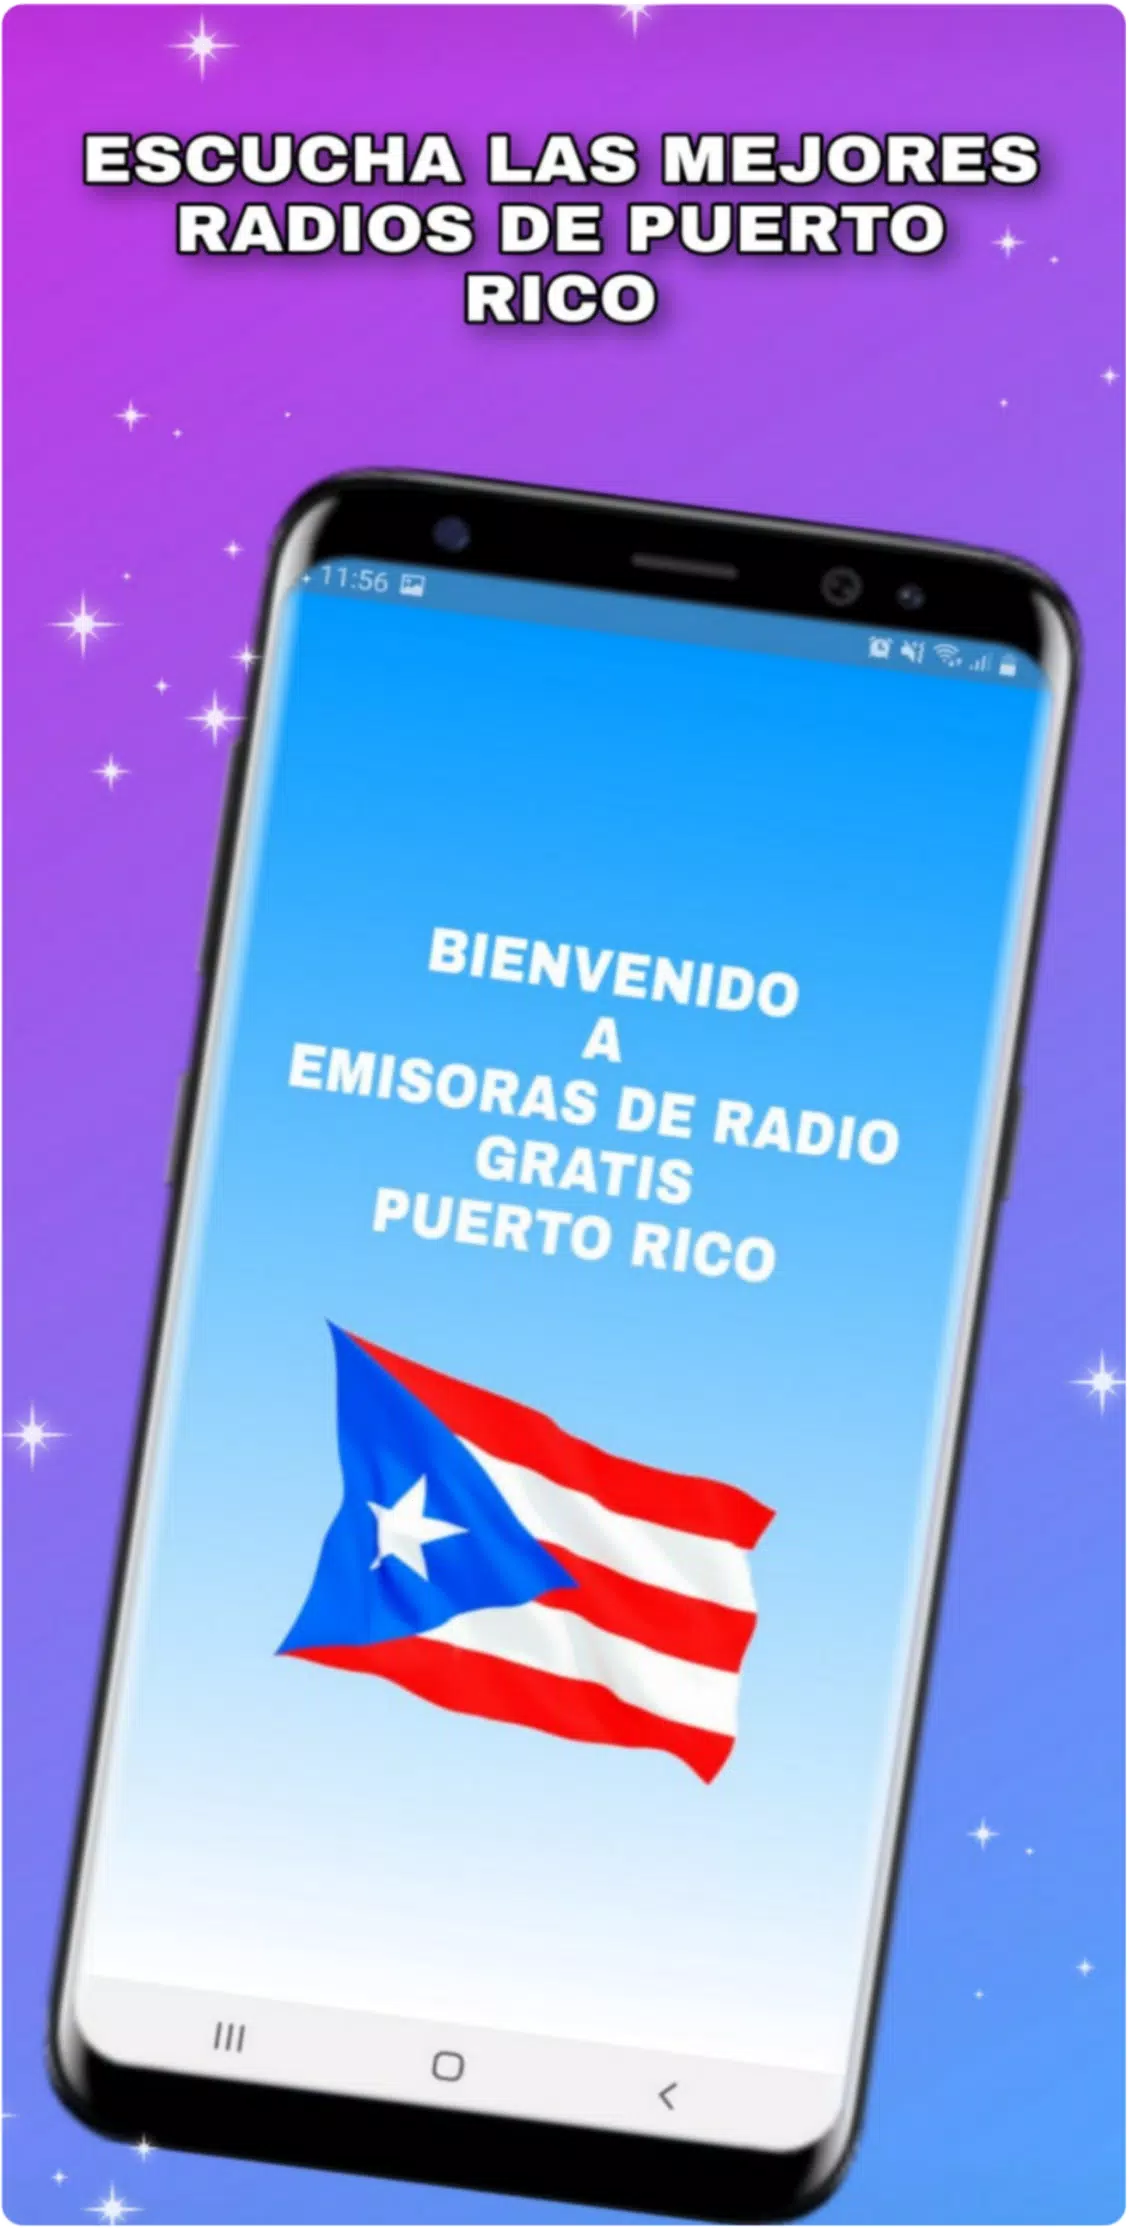 Download do APK de Emisoras de Radio Gratis Puerto Rico para Android